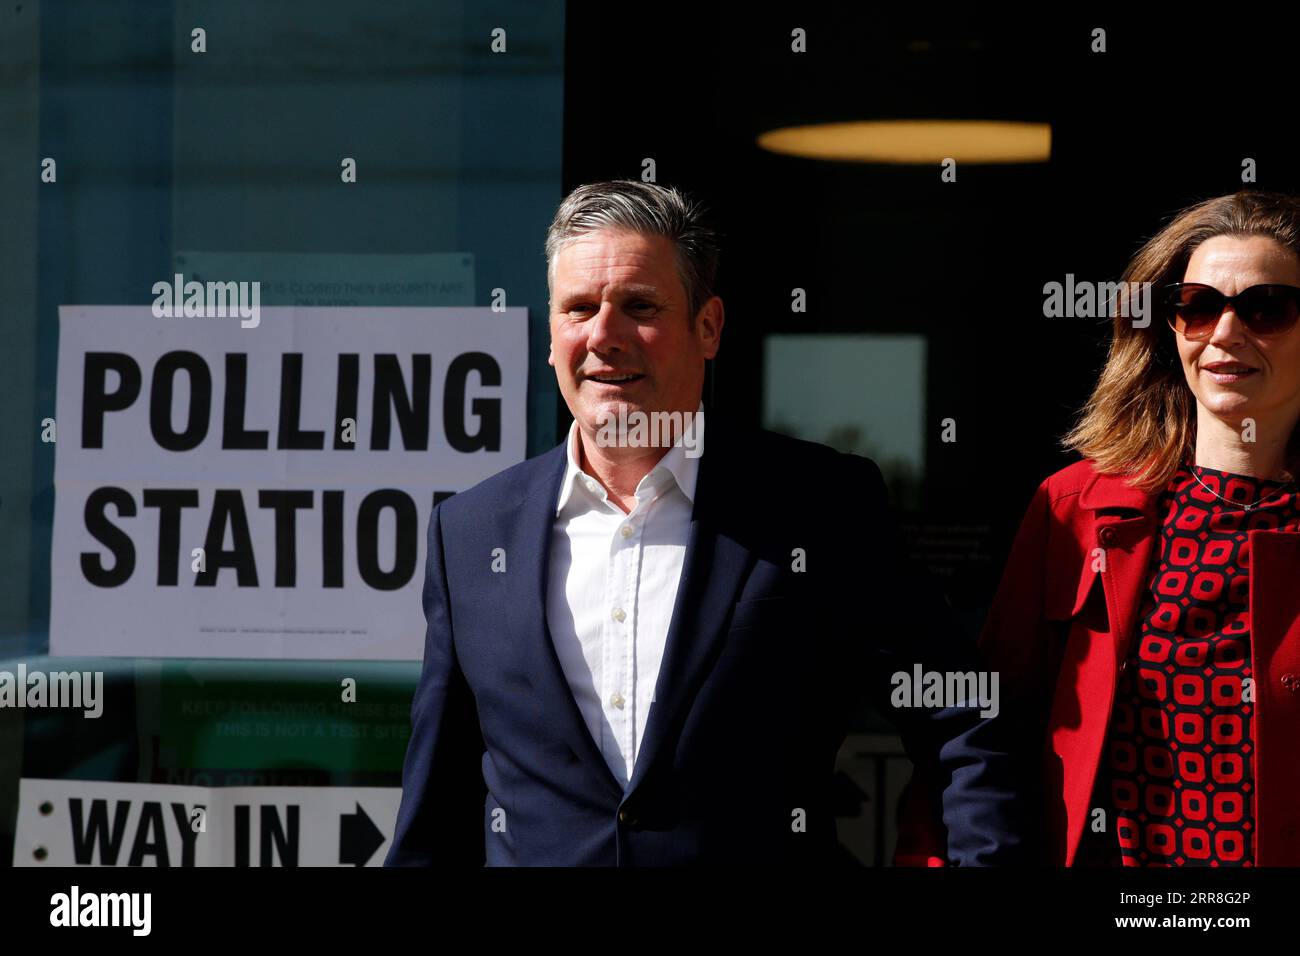 210507 -- LONDRES, le 7 mai 2021 -- le chef du Parti travailliste britannique Keir Starmer et son épouse Victoria Starmer quittent un bureau de vote après avoir voté aux élections locales à Londres, en Grande-Bretagne, le 6 mai 2021. Des millions d électeurs en Grande-Bretagne se rendent dans les bureaux de vote pour les élections locales dans ce que les commentateurs politiques ont appelé le Super jeudi, qui est considéré comme un test majeur pour les principaux dirigeants des partis politiques britanniques. Plus de 5 000 sièges sont à gagner lors des élections municipales et municipales, avec le maire de Londres et 12 maires provinciaux ainsi que des commissaires de police et de crime également el Banque D'Images